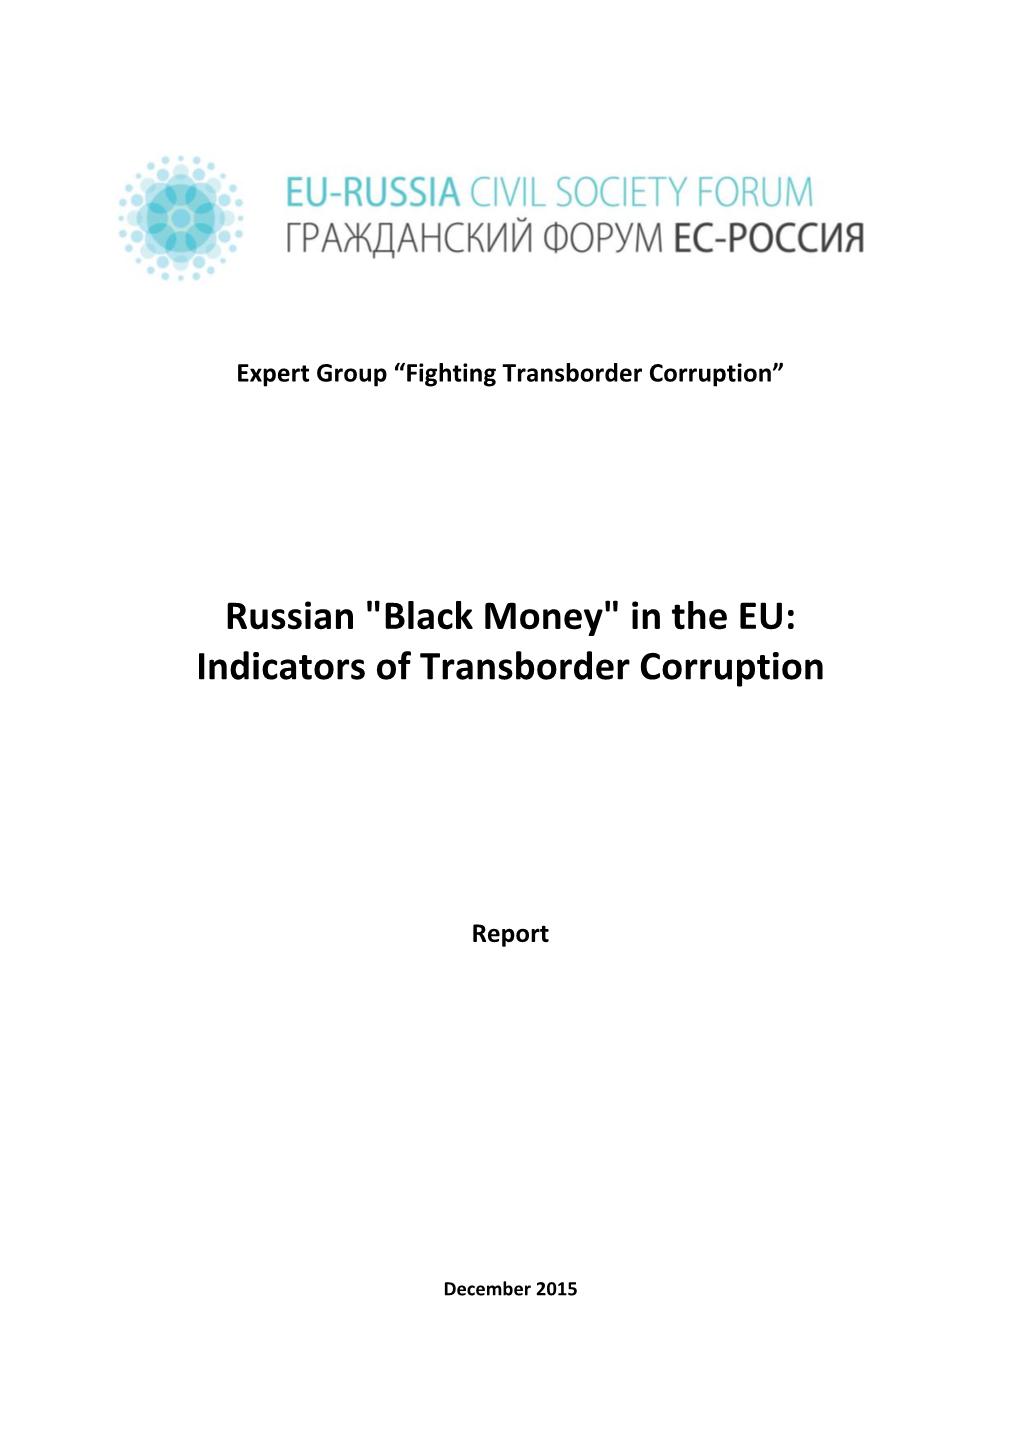 Russian "Black Money" in the EU: Indicators of Transborder Corruption